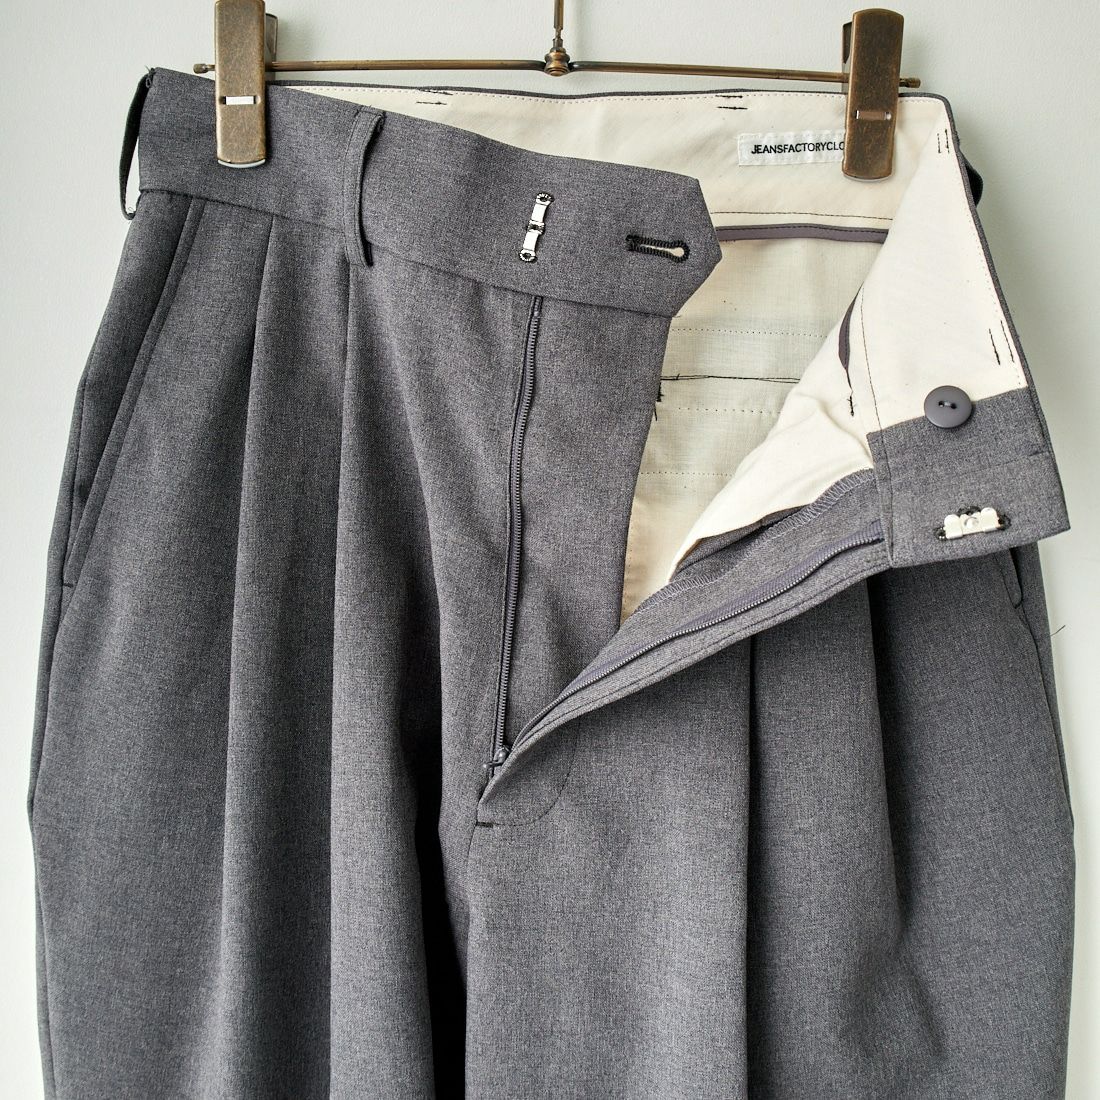 Jeans Factory Clothes [ジーンズファクトリークローズ] タックストレートパンツ [8456] ｸﾞﾚｰ